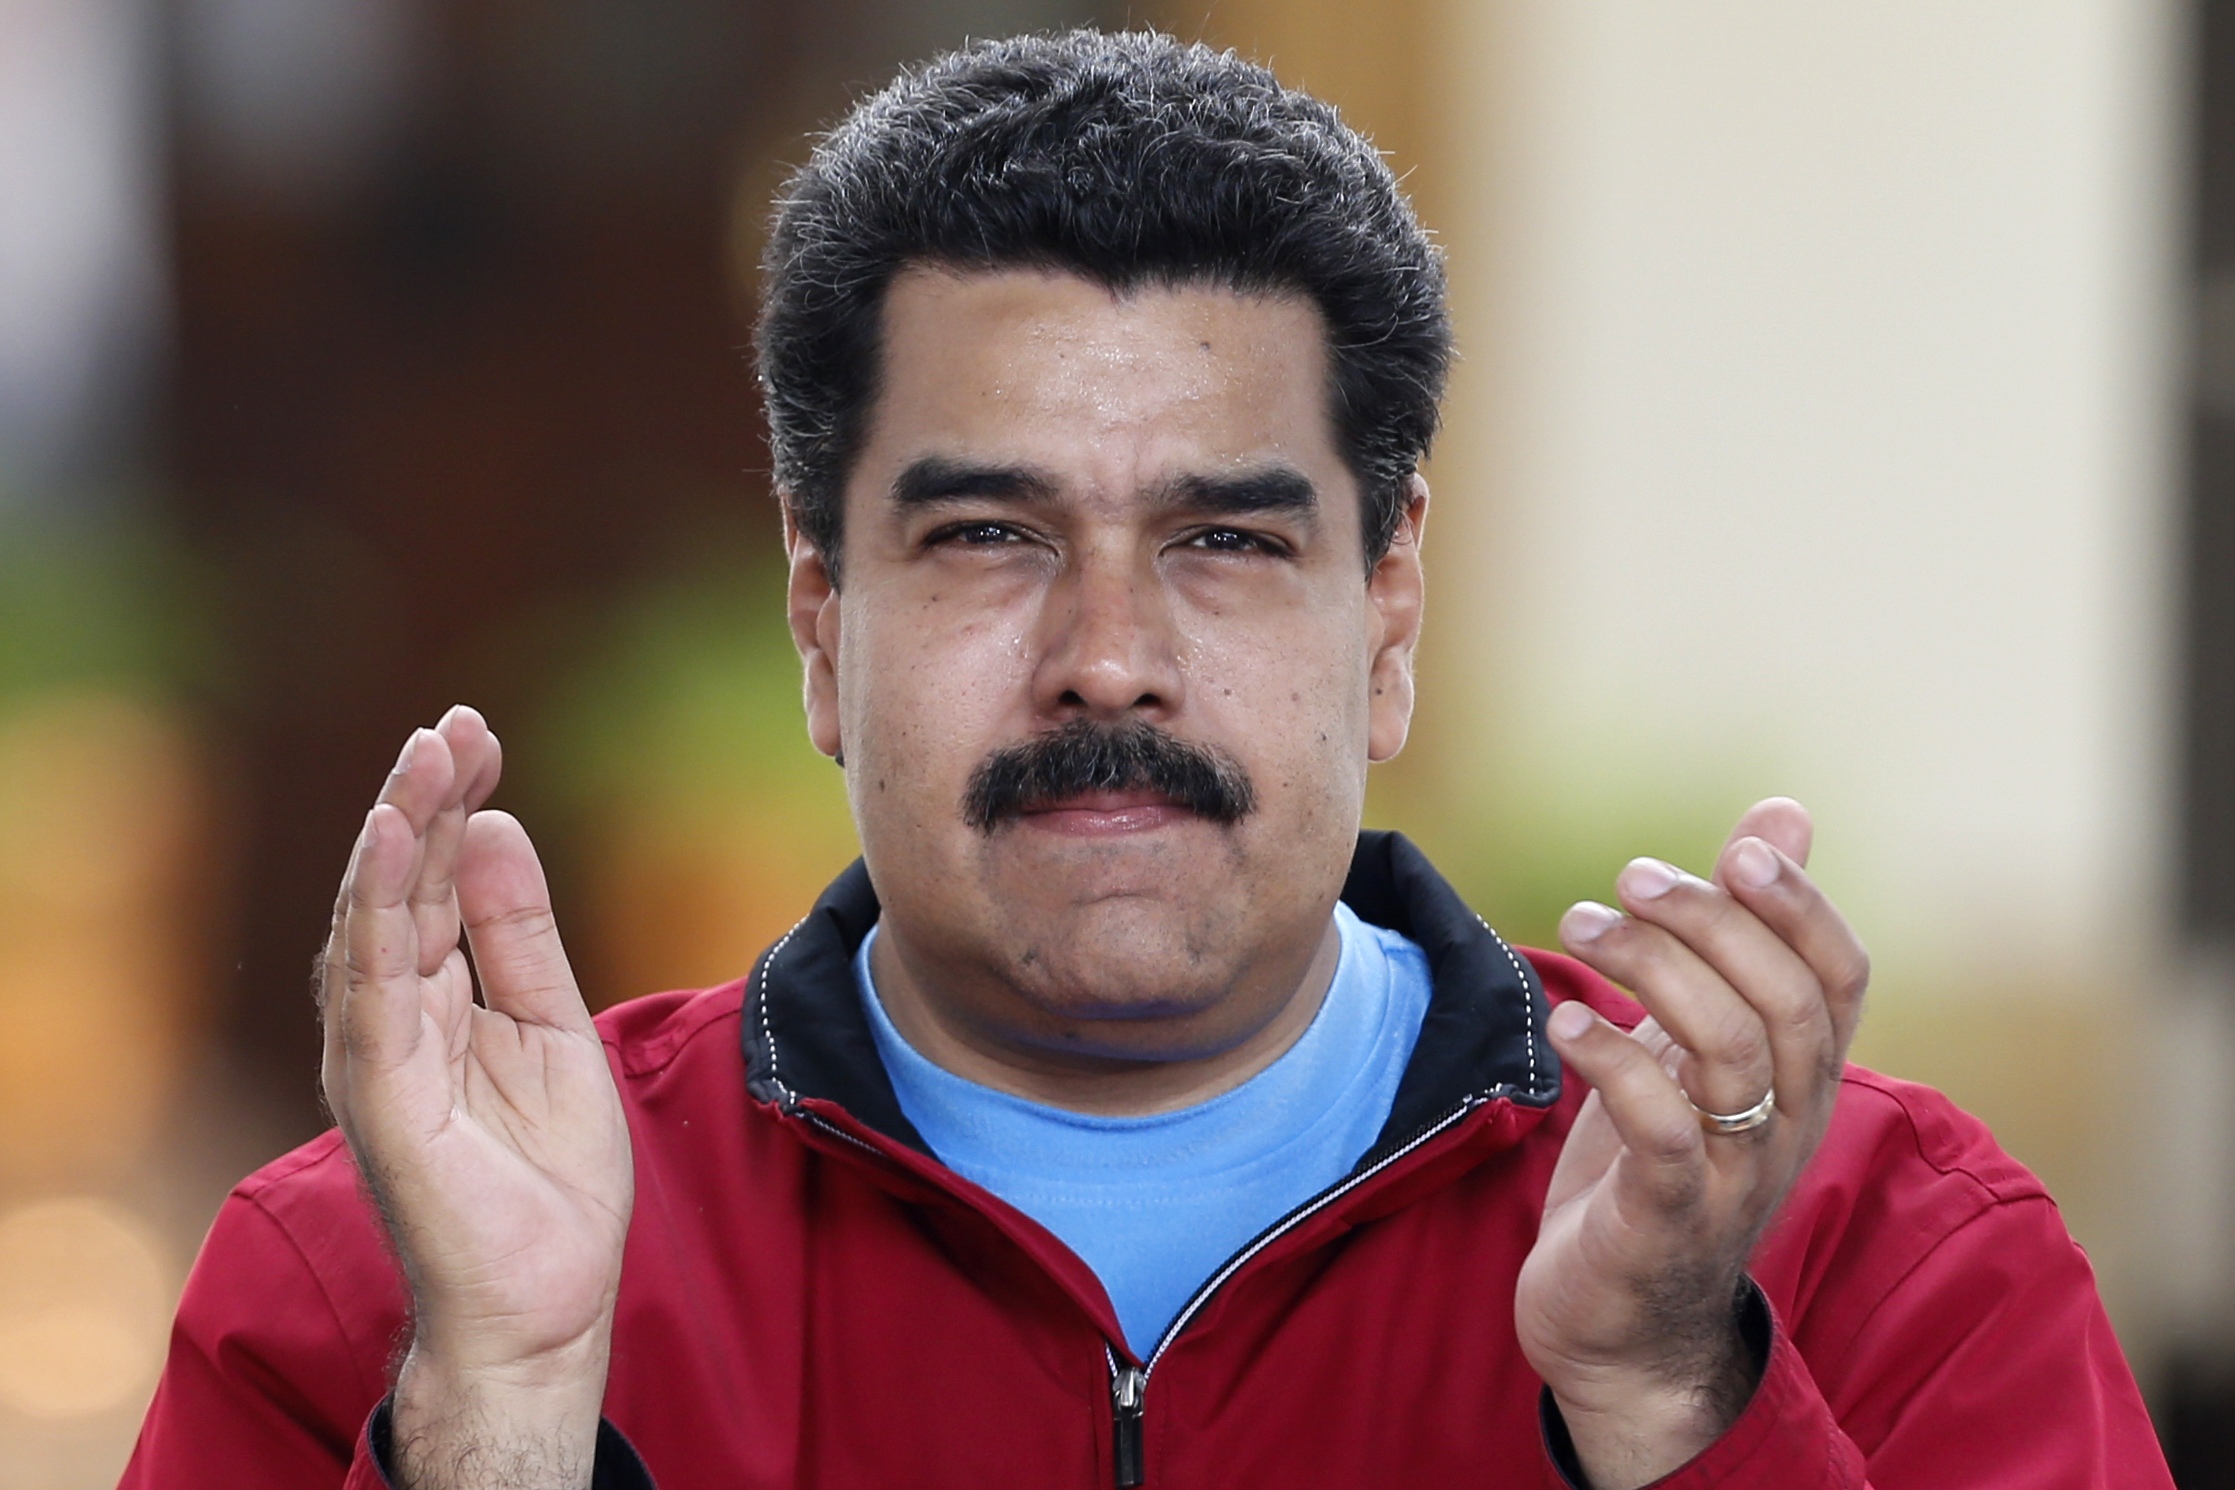 Comisiones técnicas “de países Opep y no Opep” se reunirán en Caracas, según Maduro